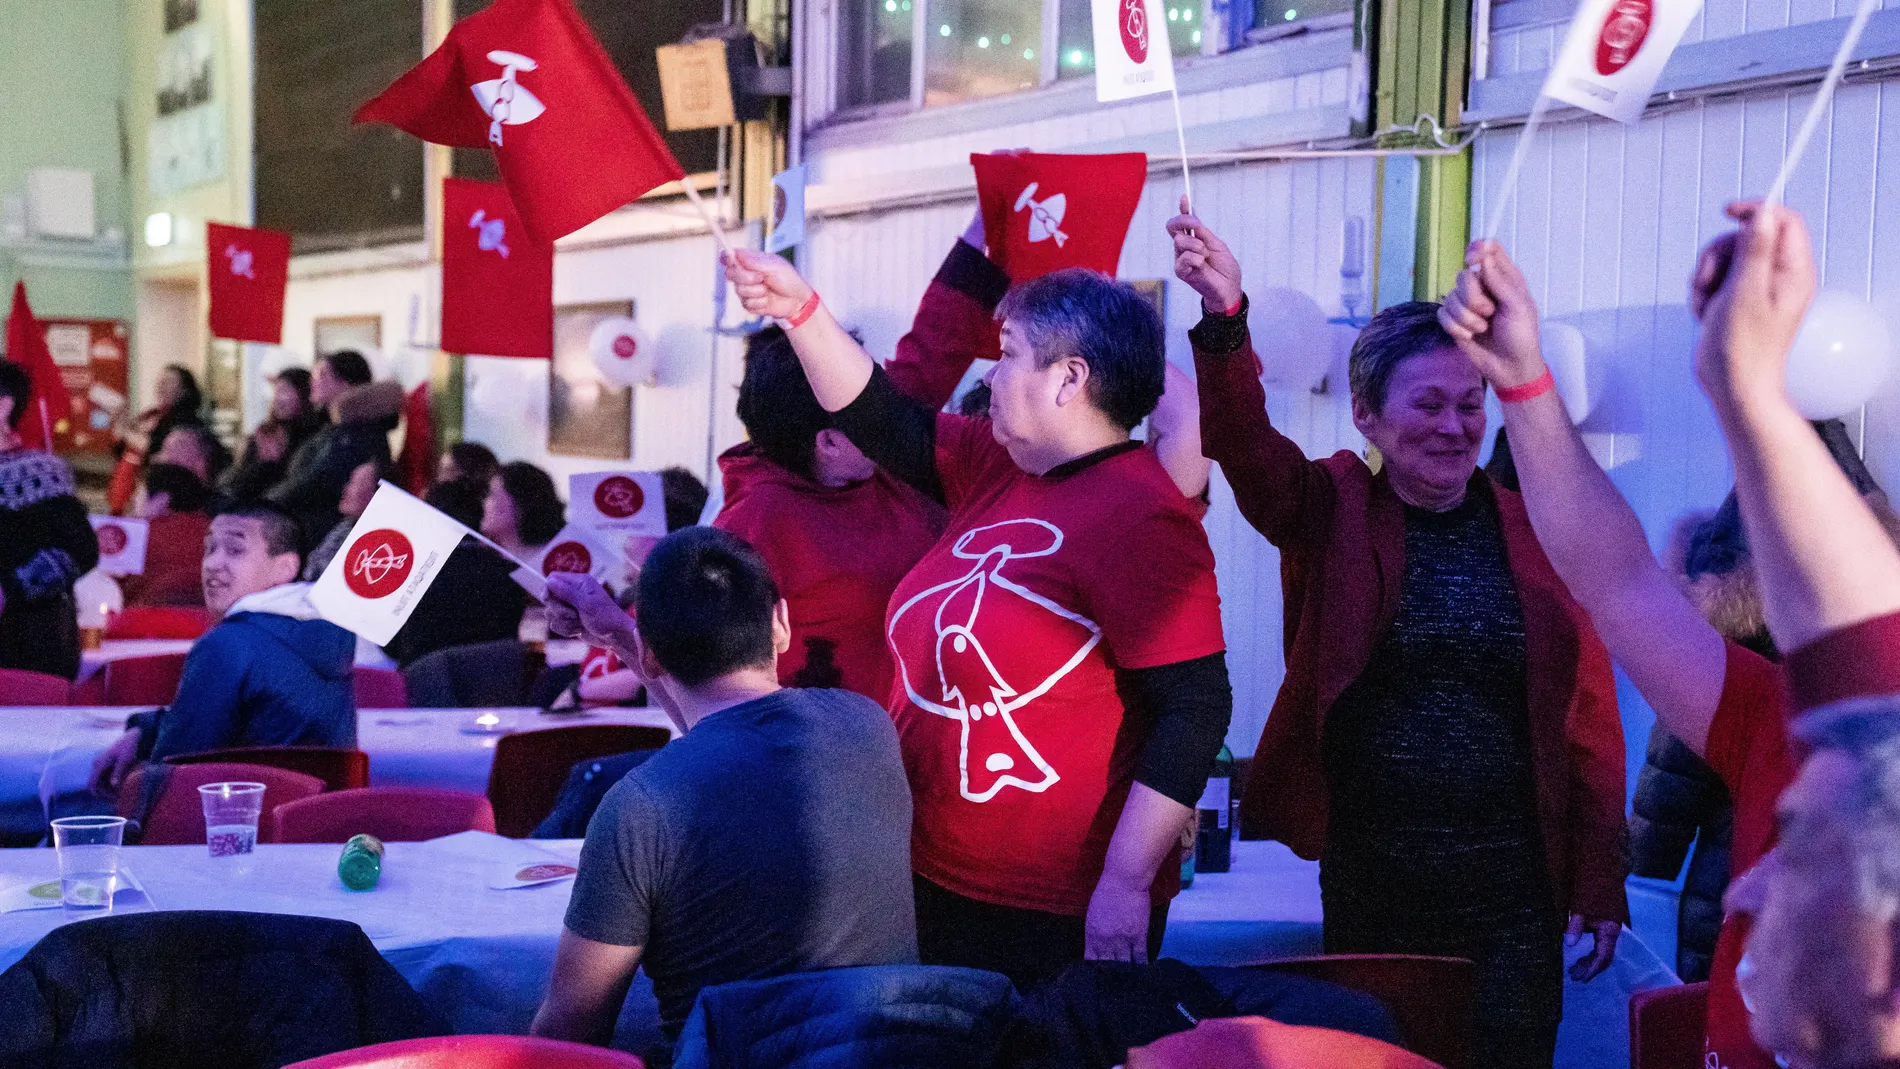 Los miembros de Inuit Ataqatigiit celebran su victoria electoral en Nuuk, la capital de Groenlandia